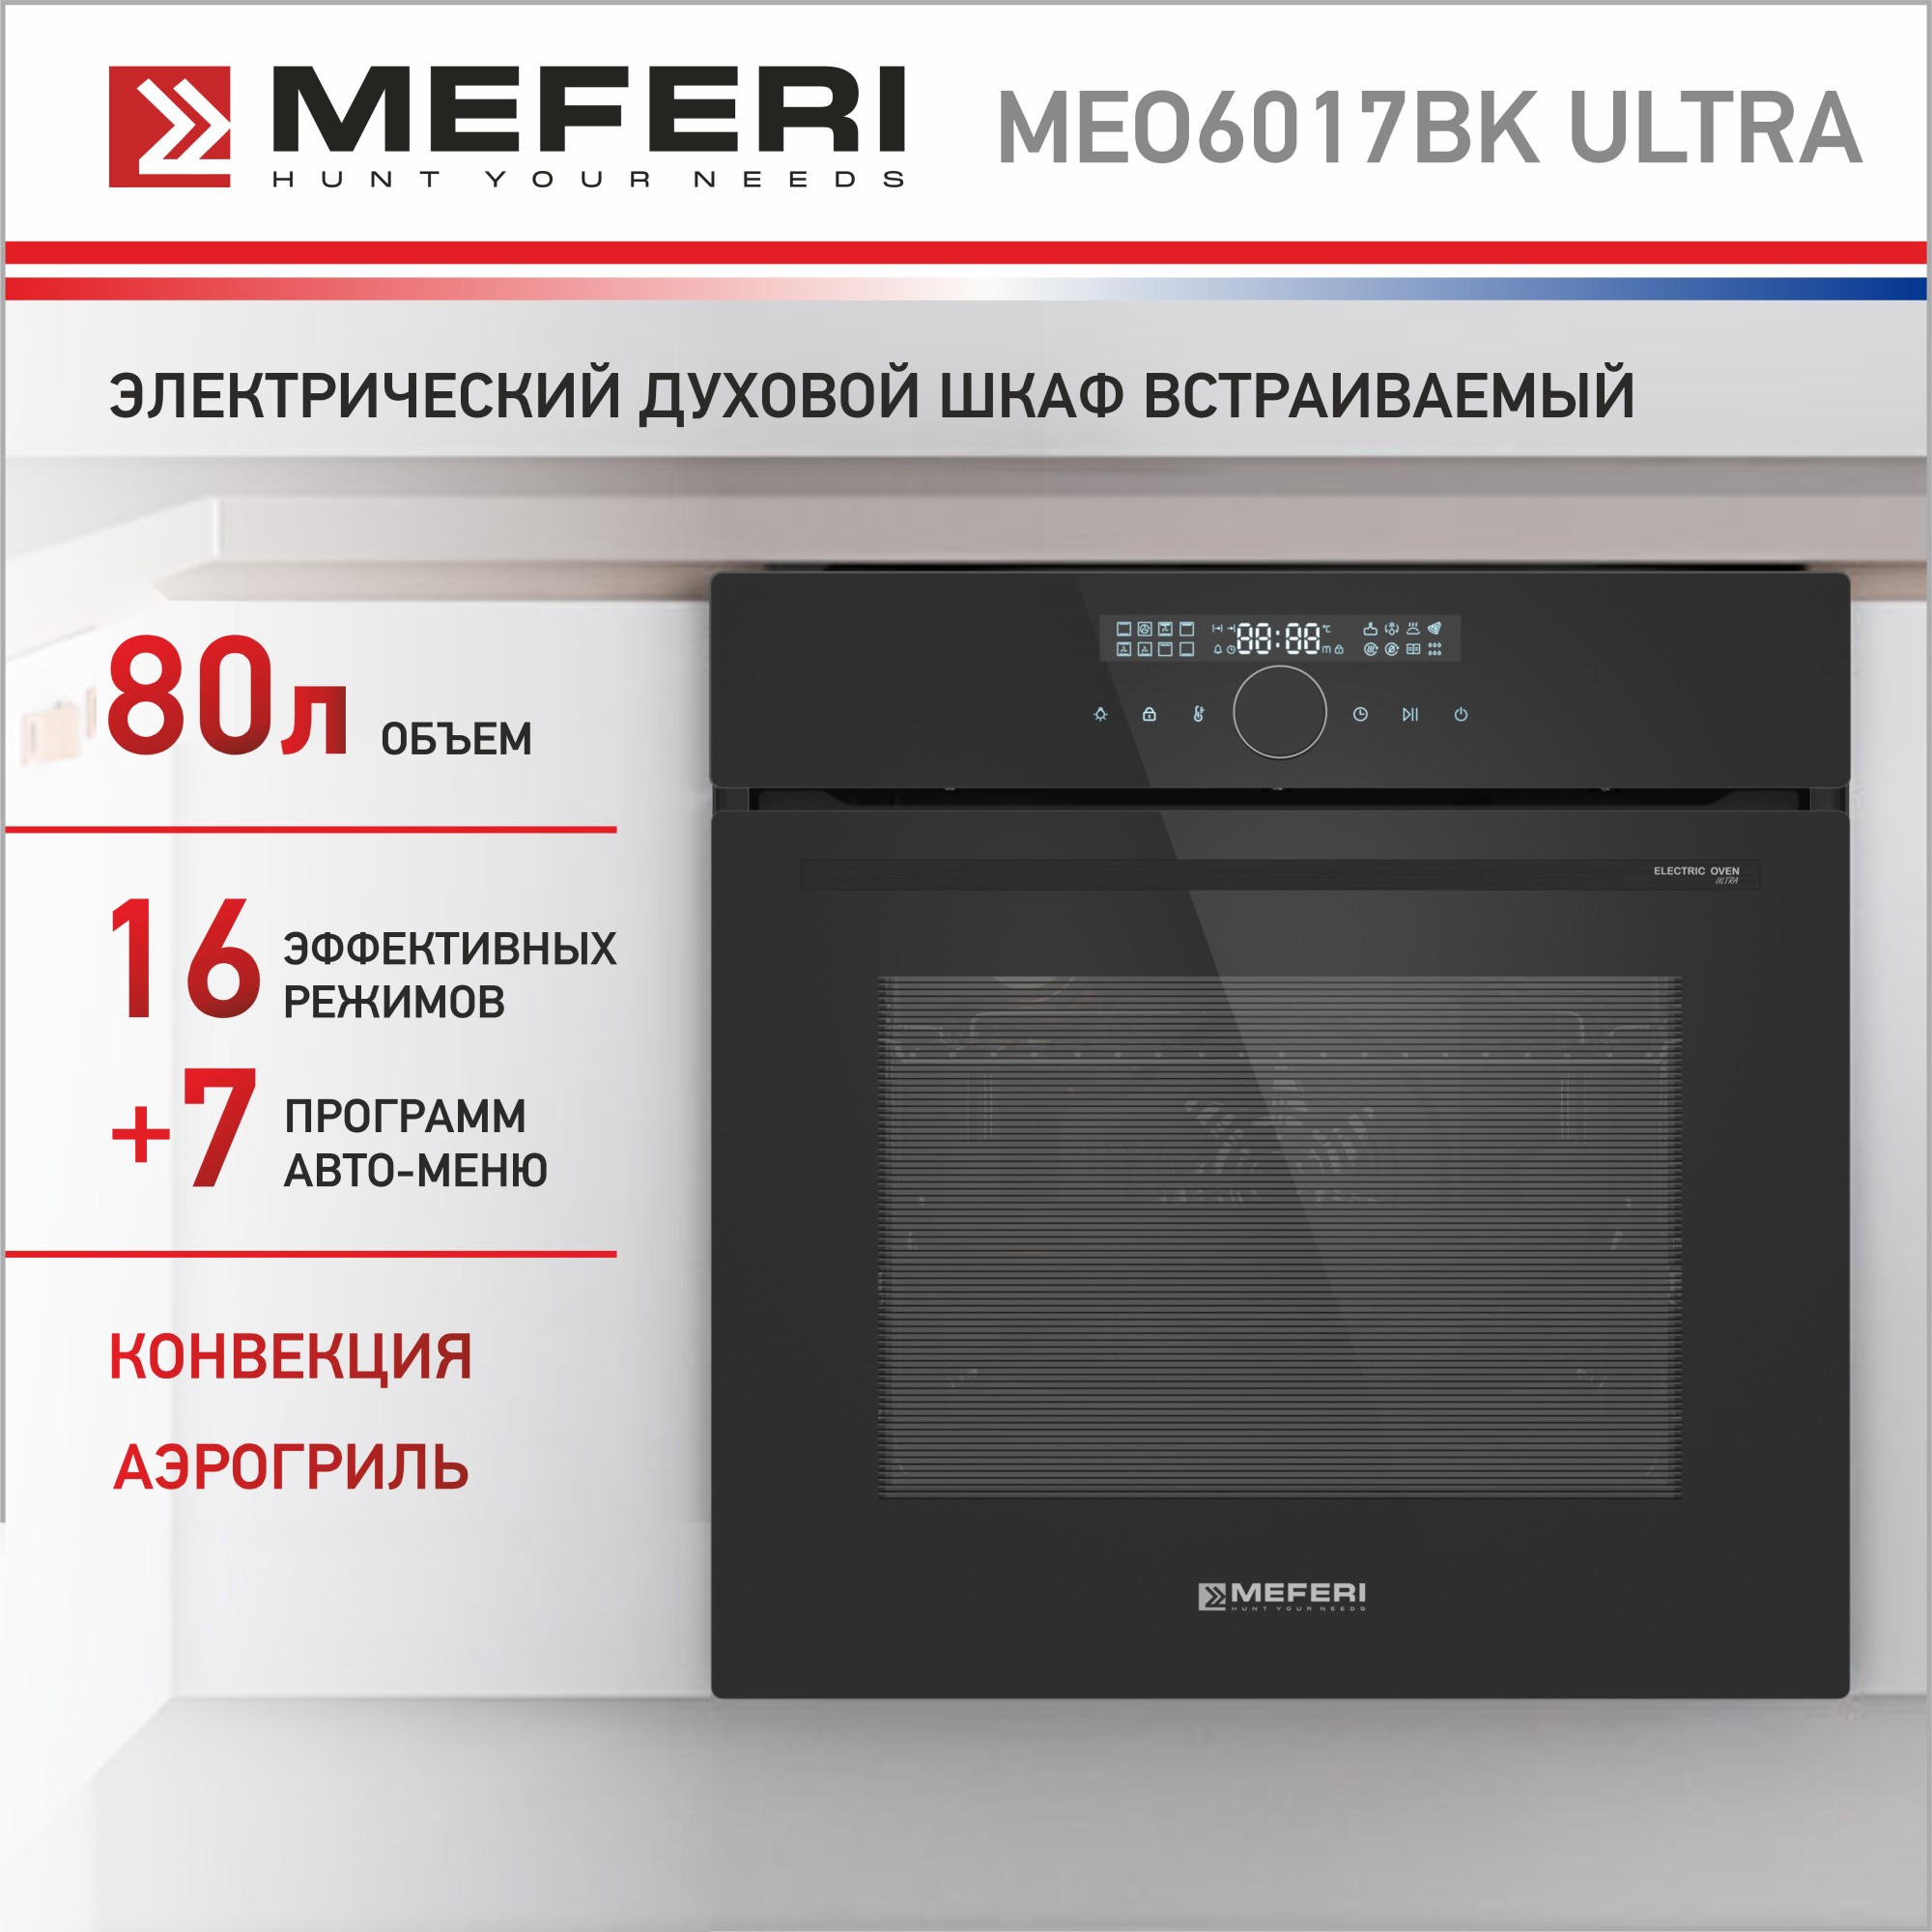 Электрический духовой шкаф MEFERI MEO6017BK ULTRA комплект обновления sculpfun s9 до s30 ultra 22 вт